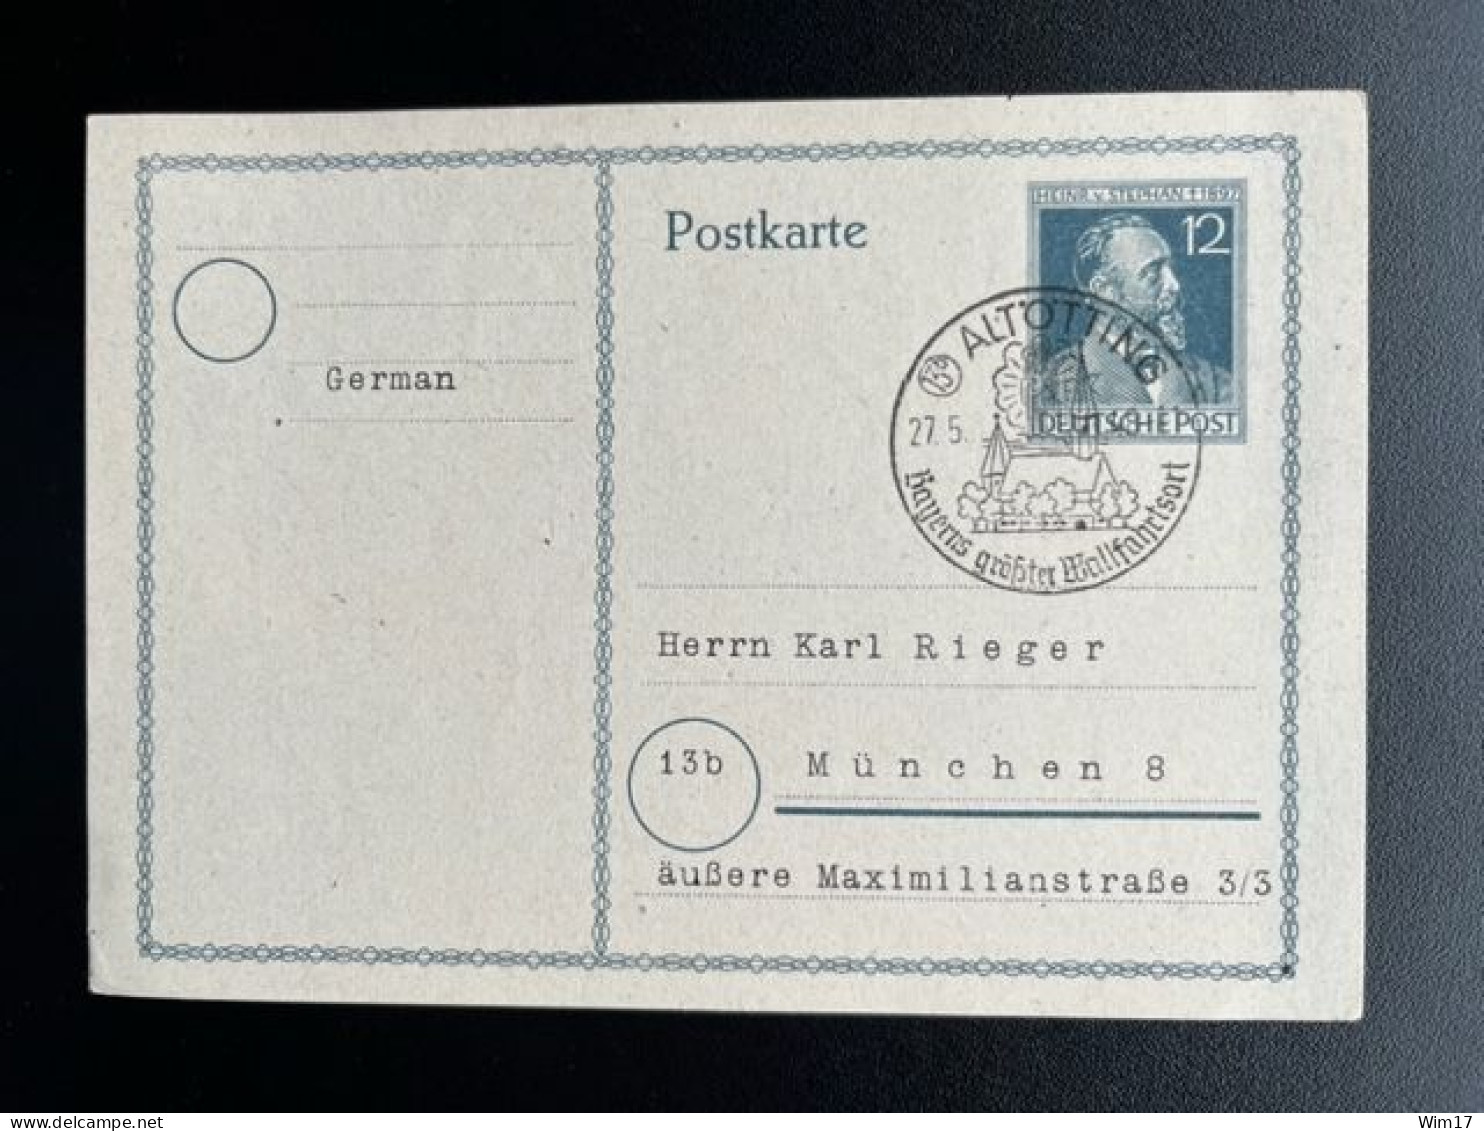 GERMANY 1948 POSTCARD ALTOTTING TO MUNCHEN 27-05-1948 DUITSLAND DEUTSCHLAND SST - Ganzsachen